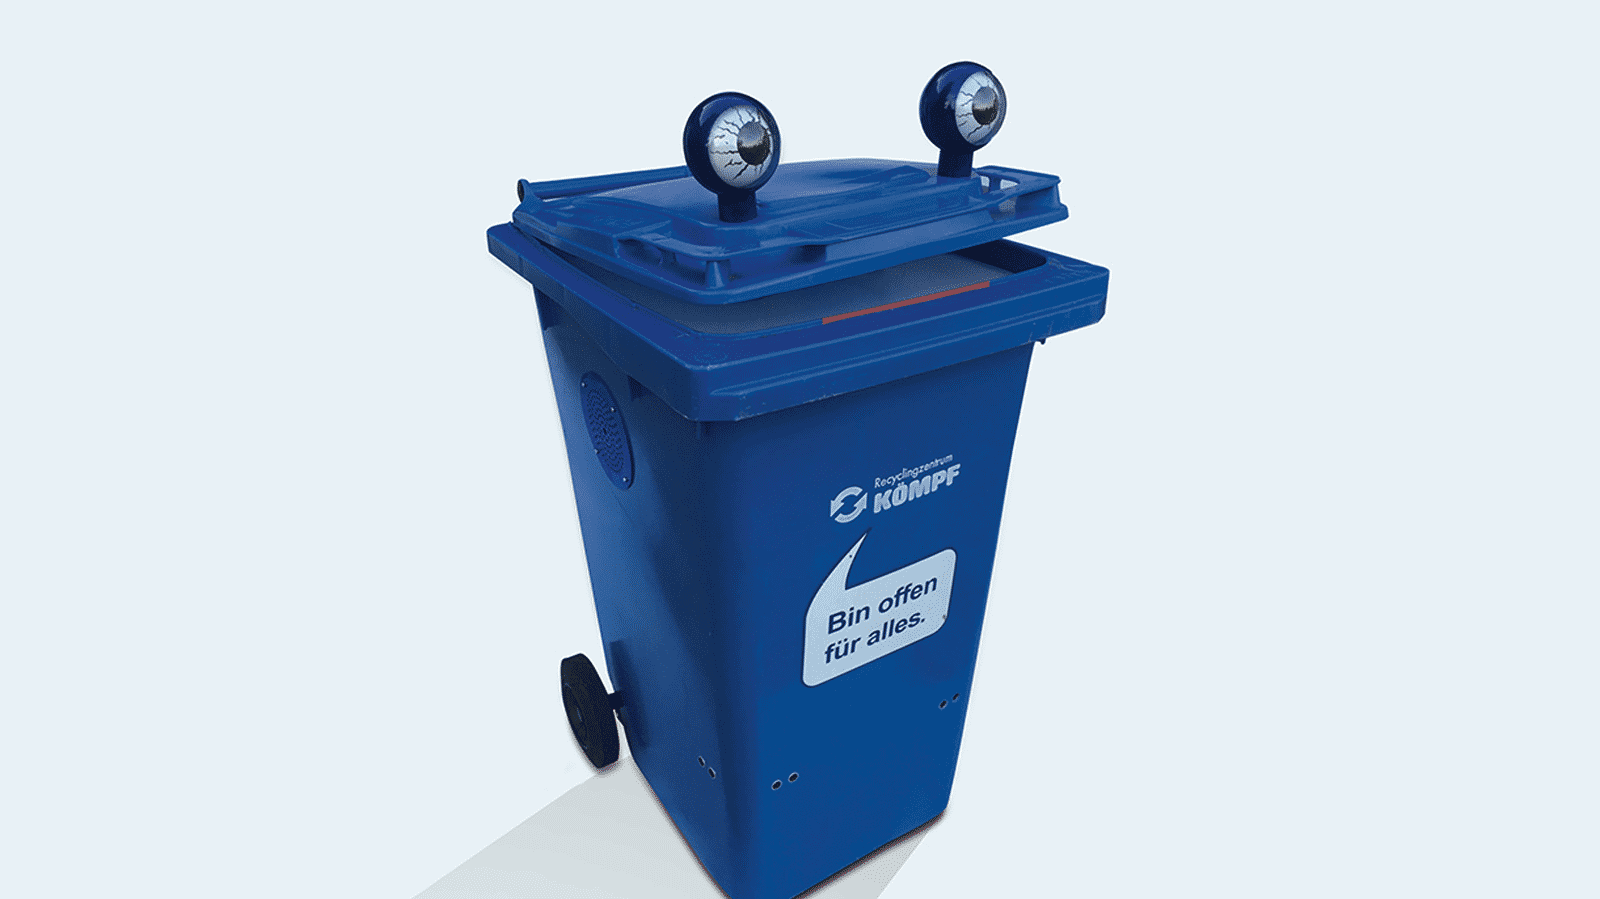 Blaue Mülltonne mit Stielaugen und einer aufgedruckten Sprechblase "Bin offen für alles." unter dem Markenlogo "Recyclingzentrum Kömpf".